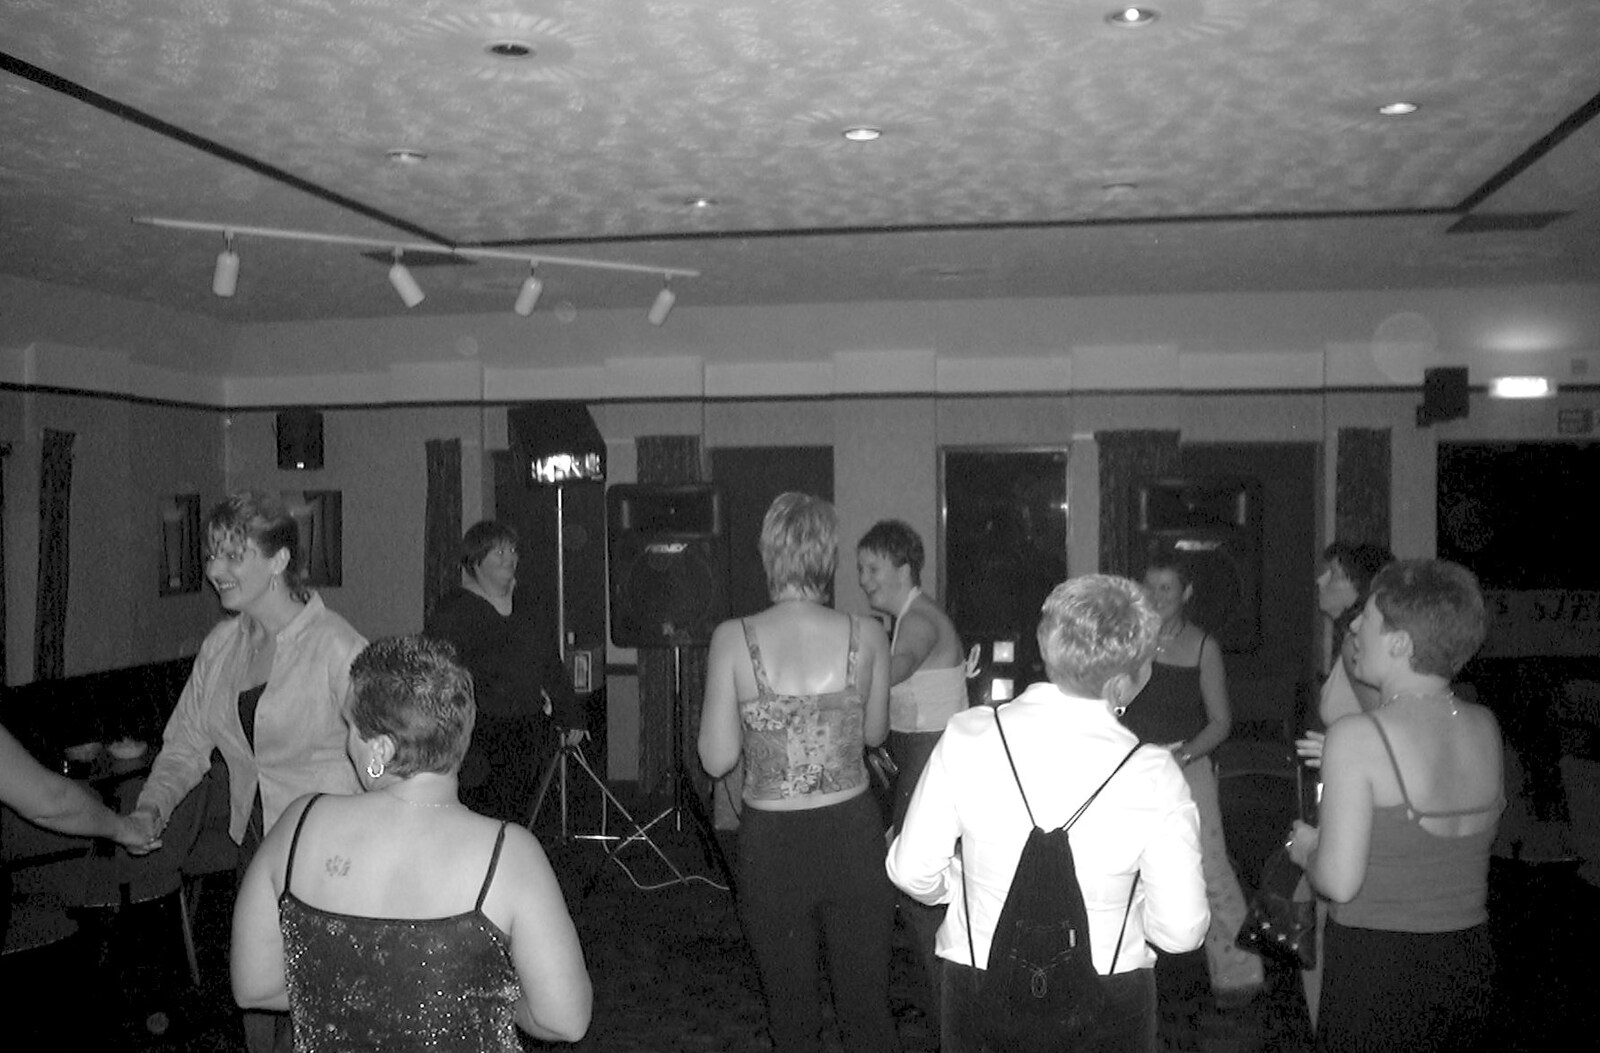 Arnewood School Class of '83 Reunion, Fawcett's Field, New Milton - 2nd November 2002: Disco dancing